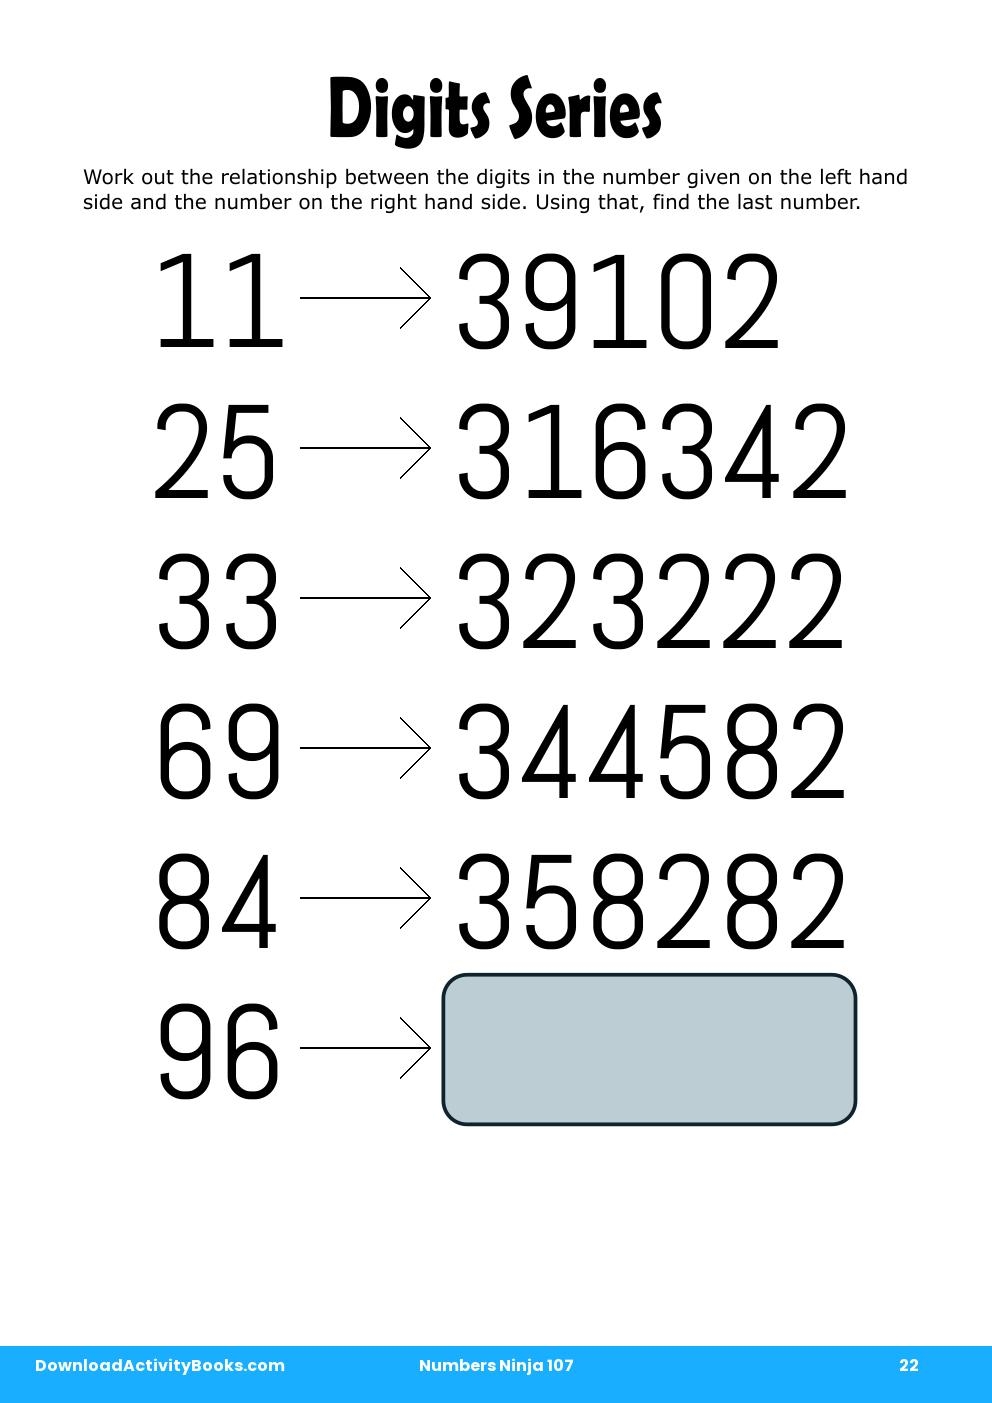 Digits Series in Numbers Ninja 107